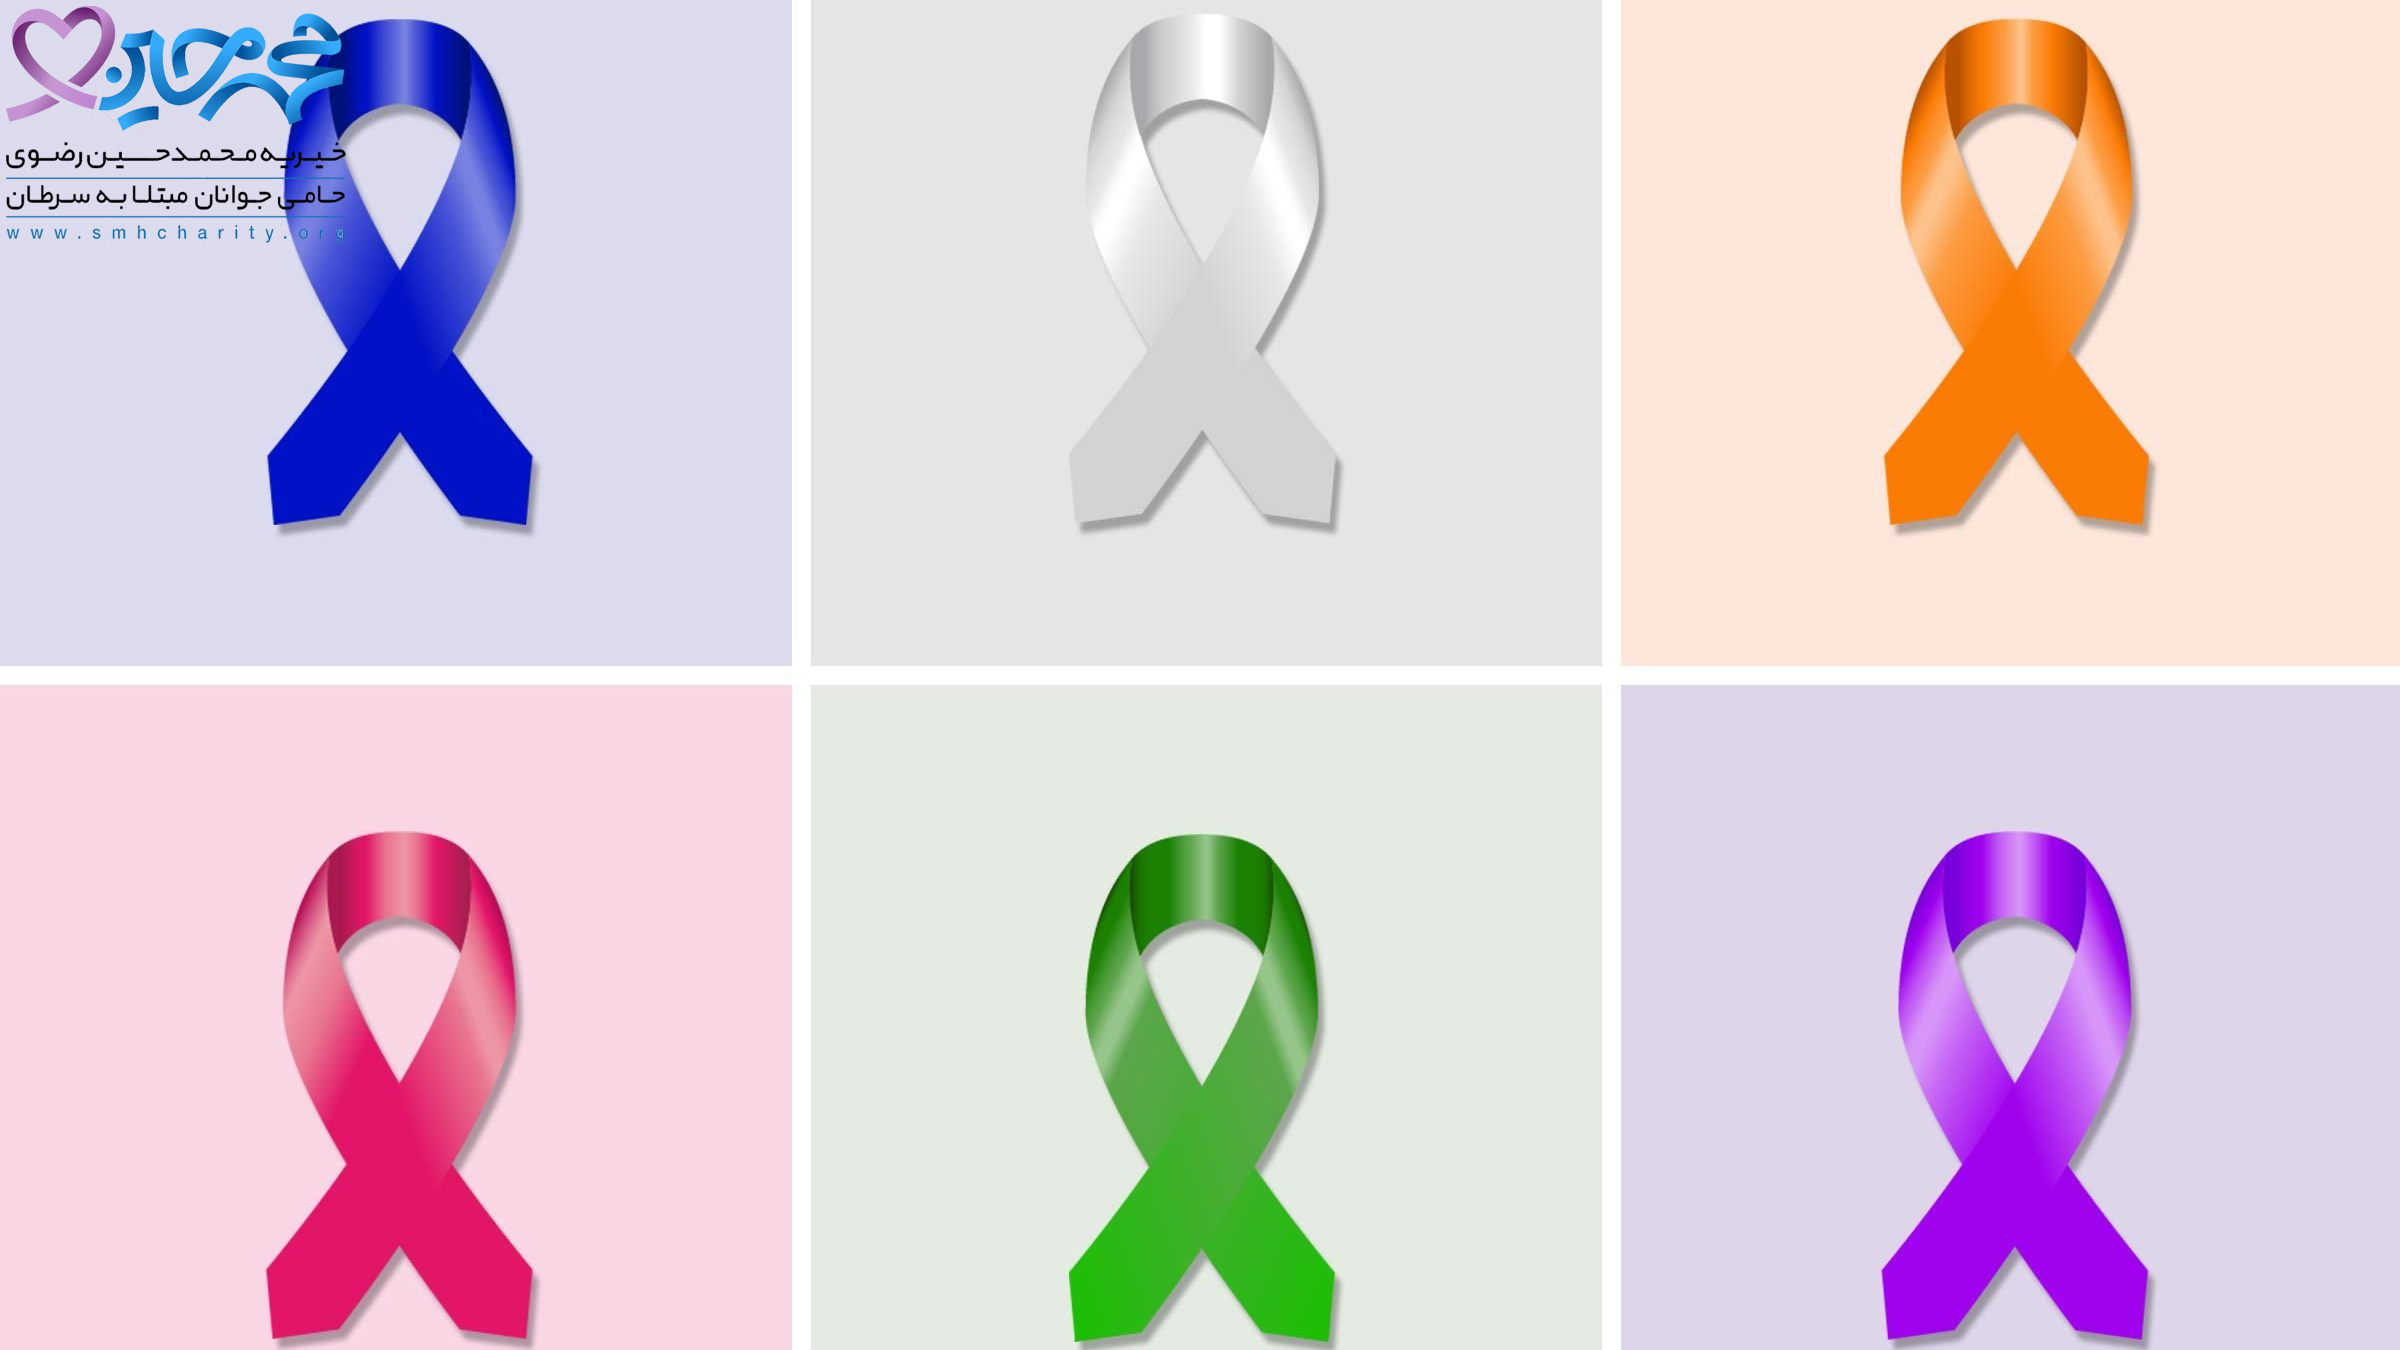 درمان سرطان|انواع سرطان|سرطان های قابل درمان|سرطان پروستات|سرطان بیضه|سرطان تیروئید|سرطان لنفوم|سرطان دهانه رحم|